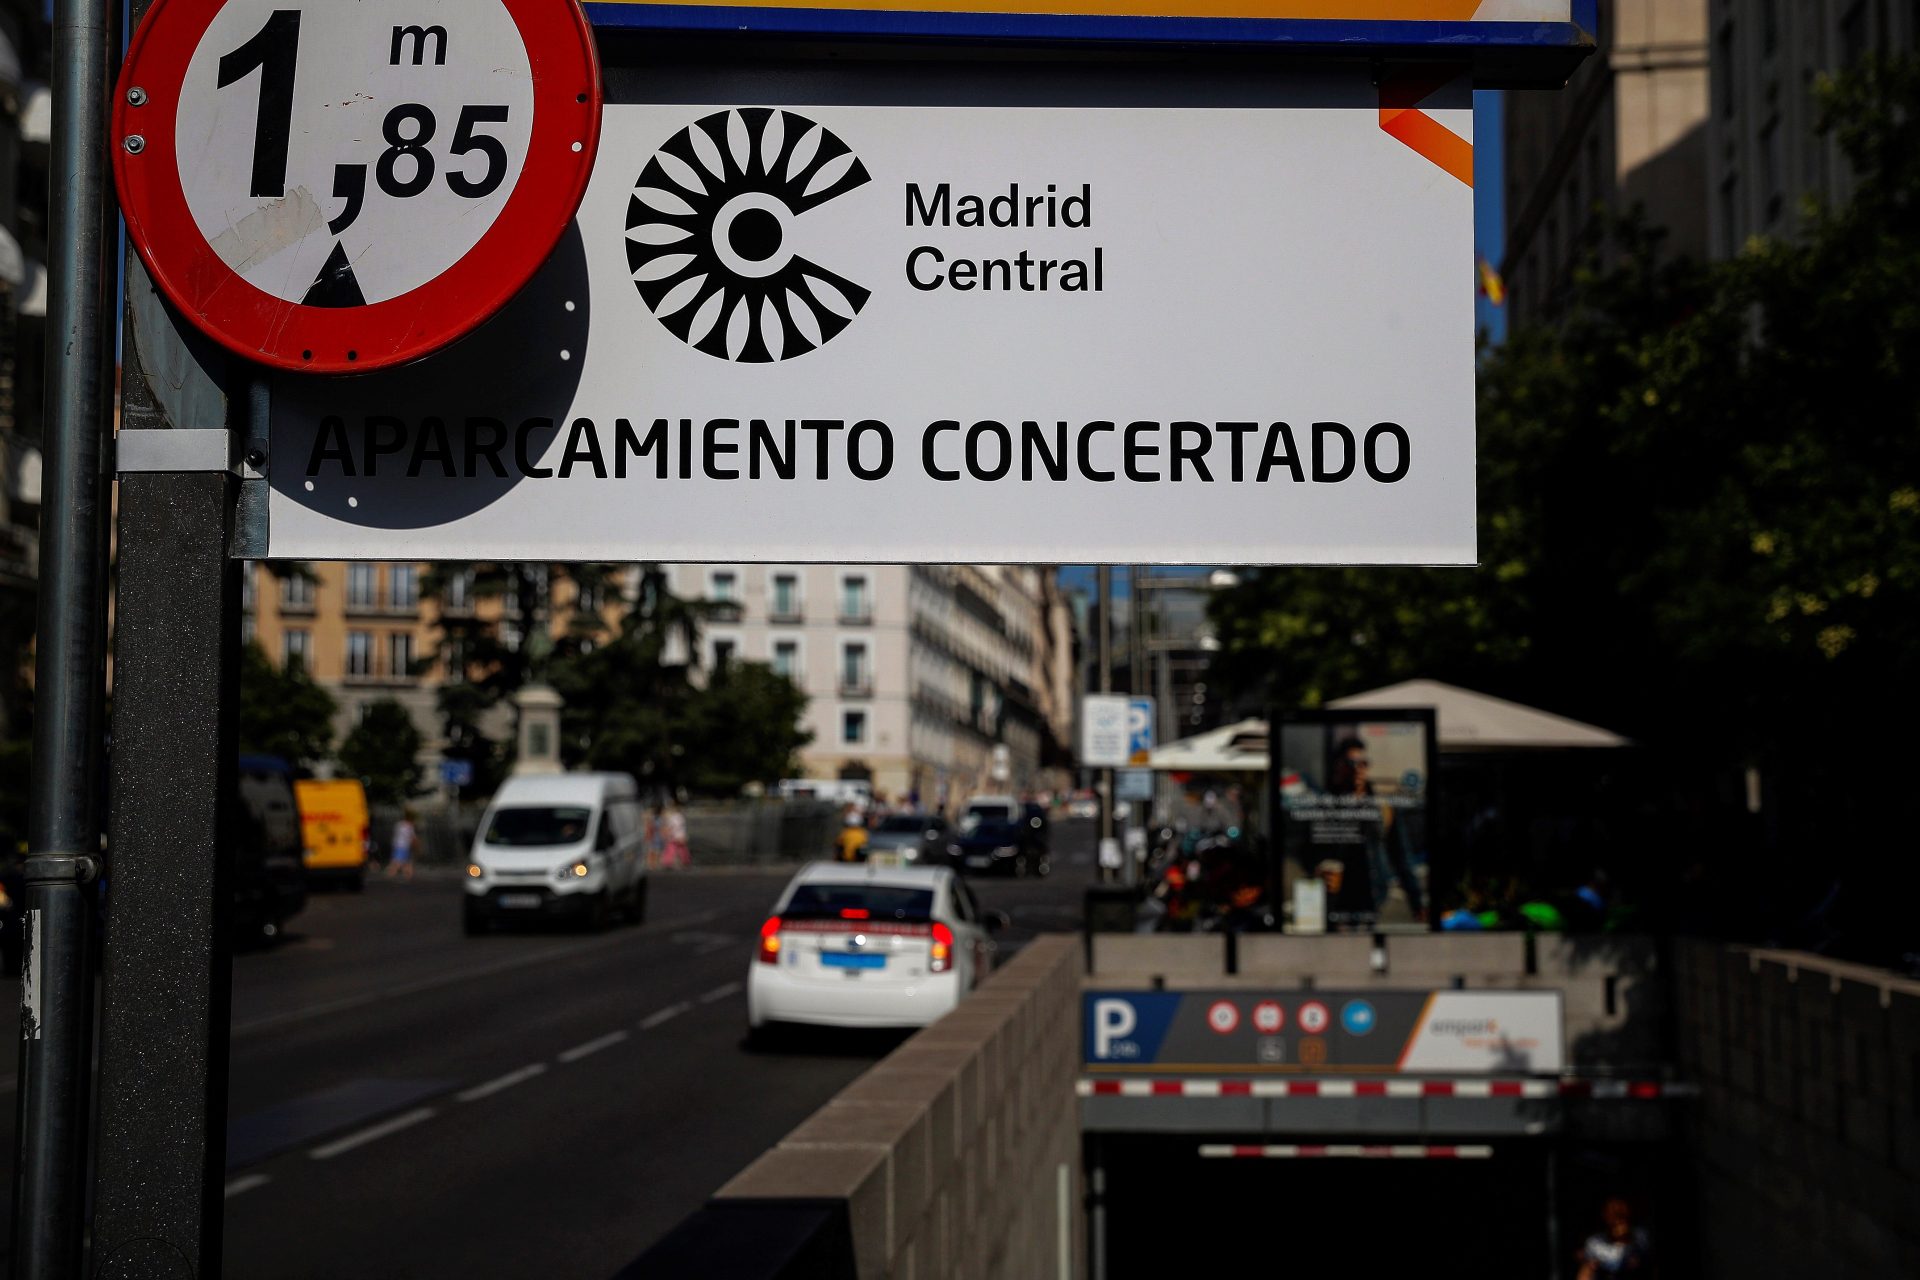 Vuelven las multas a Madrid Central: Guía de conducción